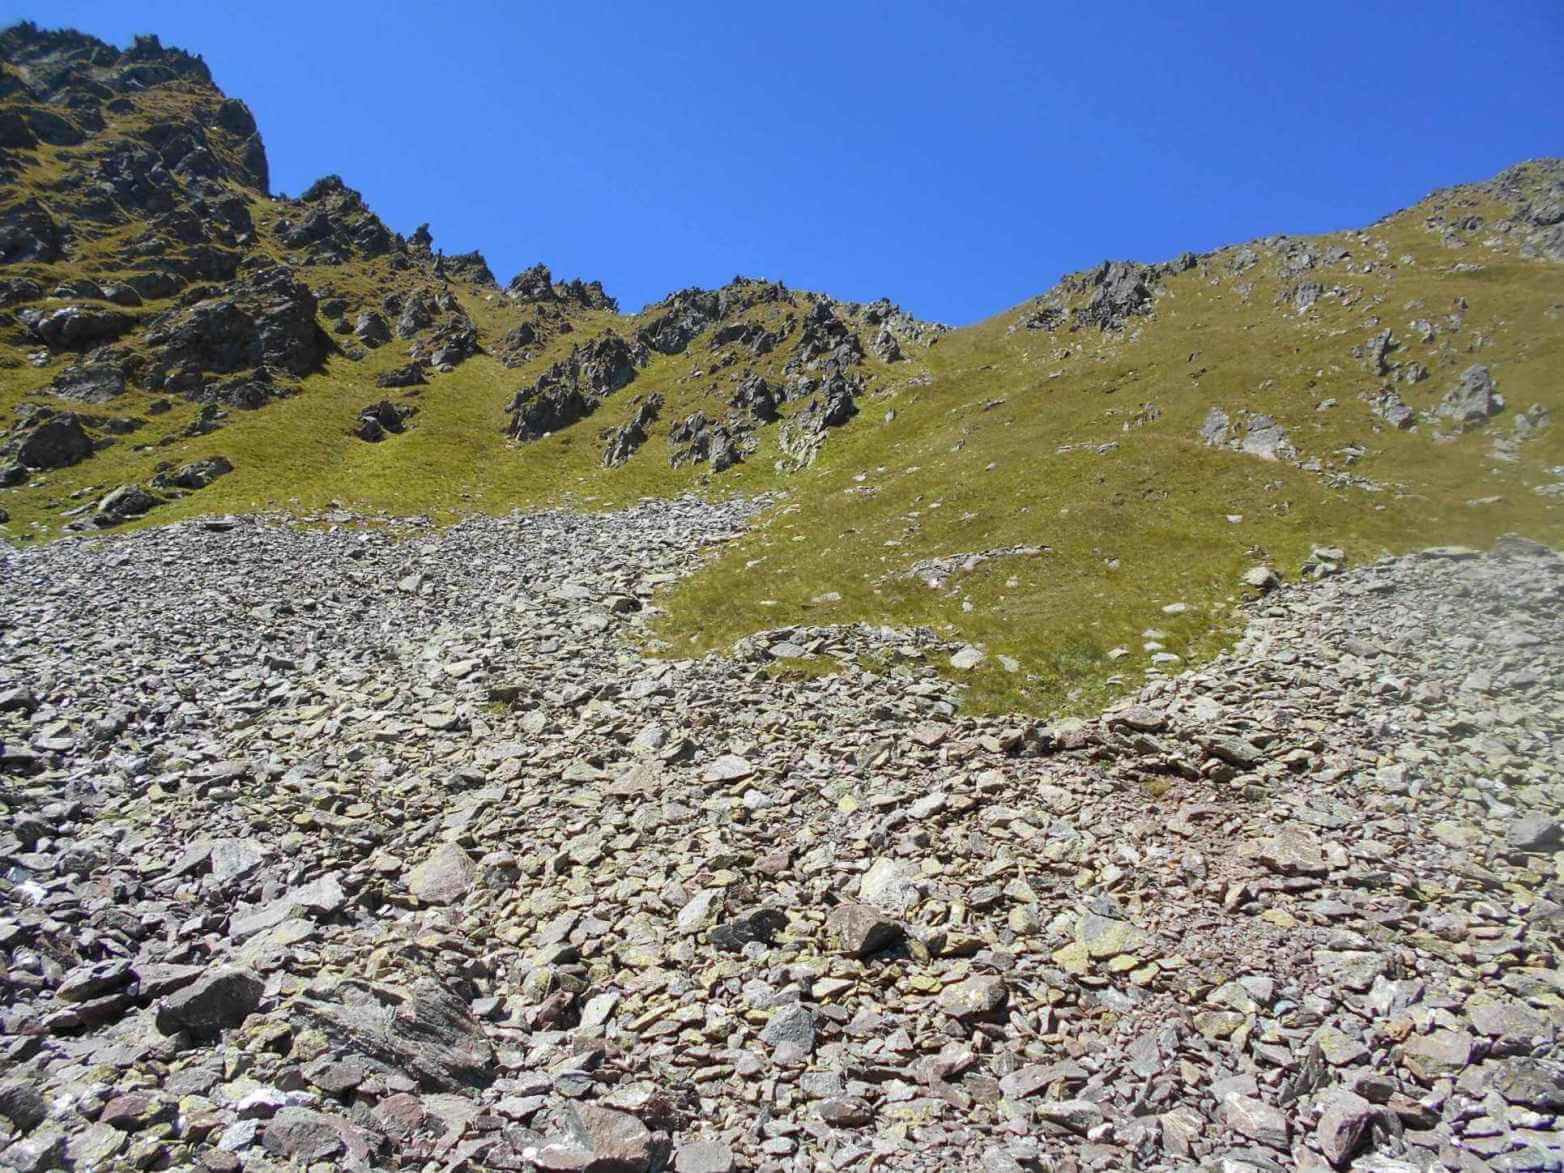 Отчет о прохождении горного маршрута 1 к.с. по Зап. Кавказу (Архыз)